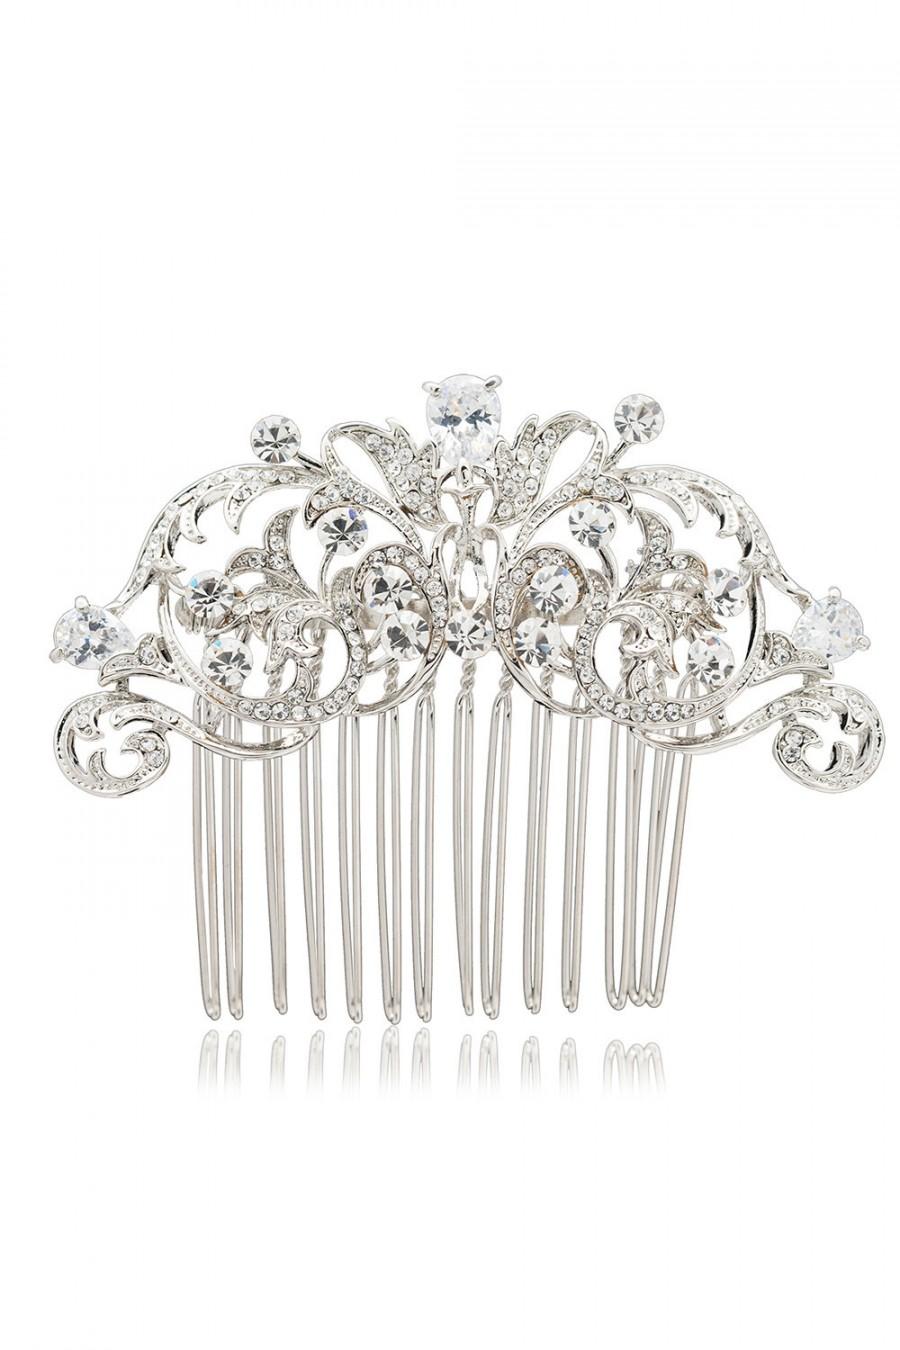 زفاف - Flower Hair Comb Wedding Hairpins for Bridal Head Jewelry Accessories with Rhinestone Crystals 2253R